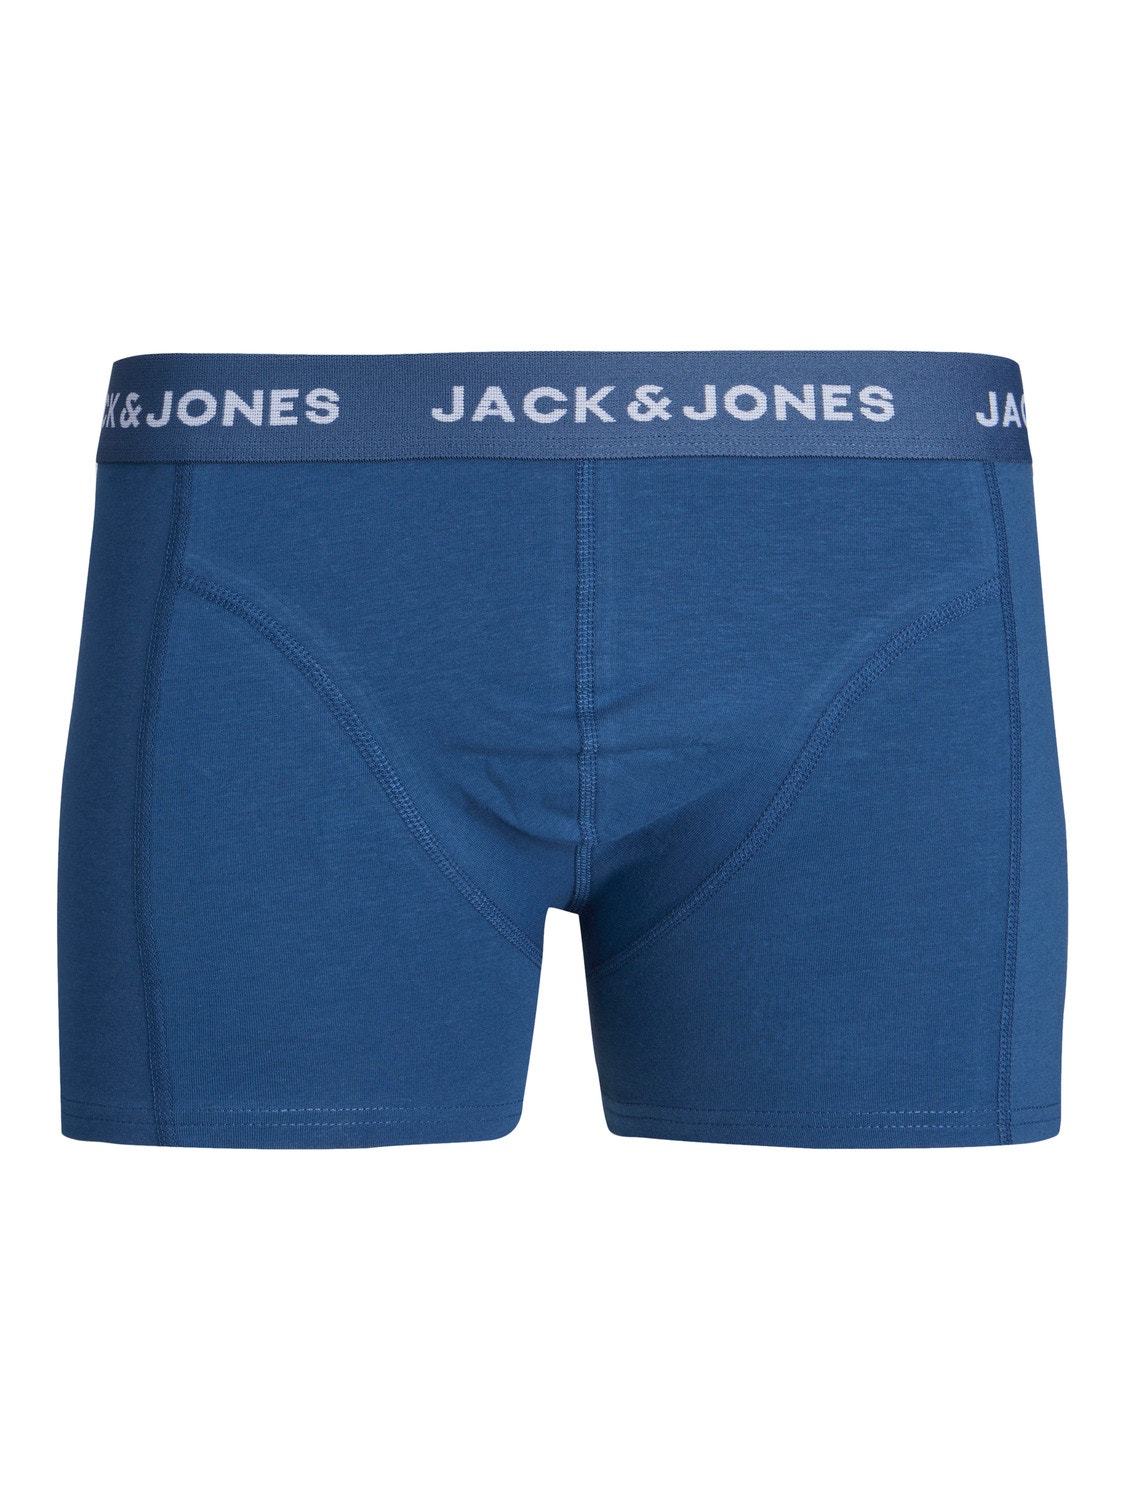 Jack & Jones Confezione da 3 Boxer -Dark Green - 12250206